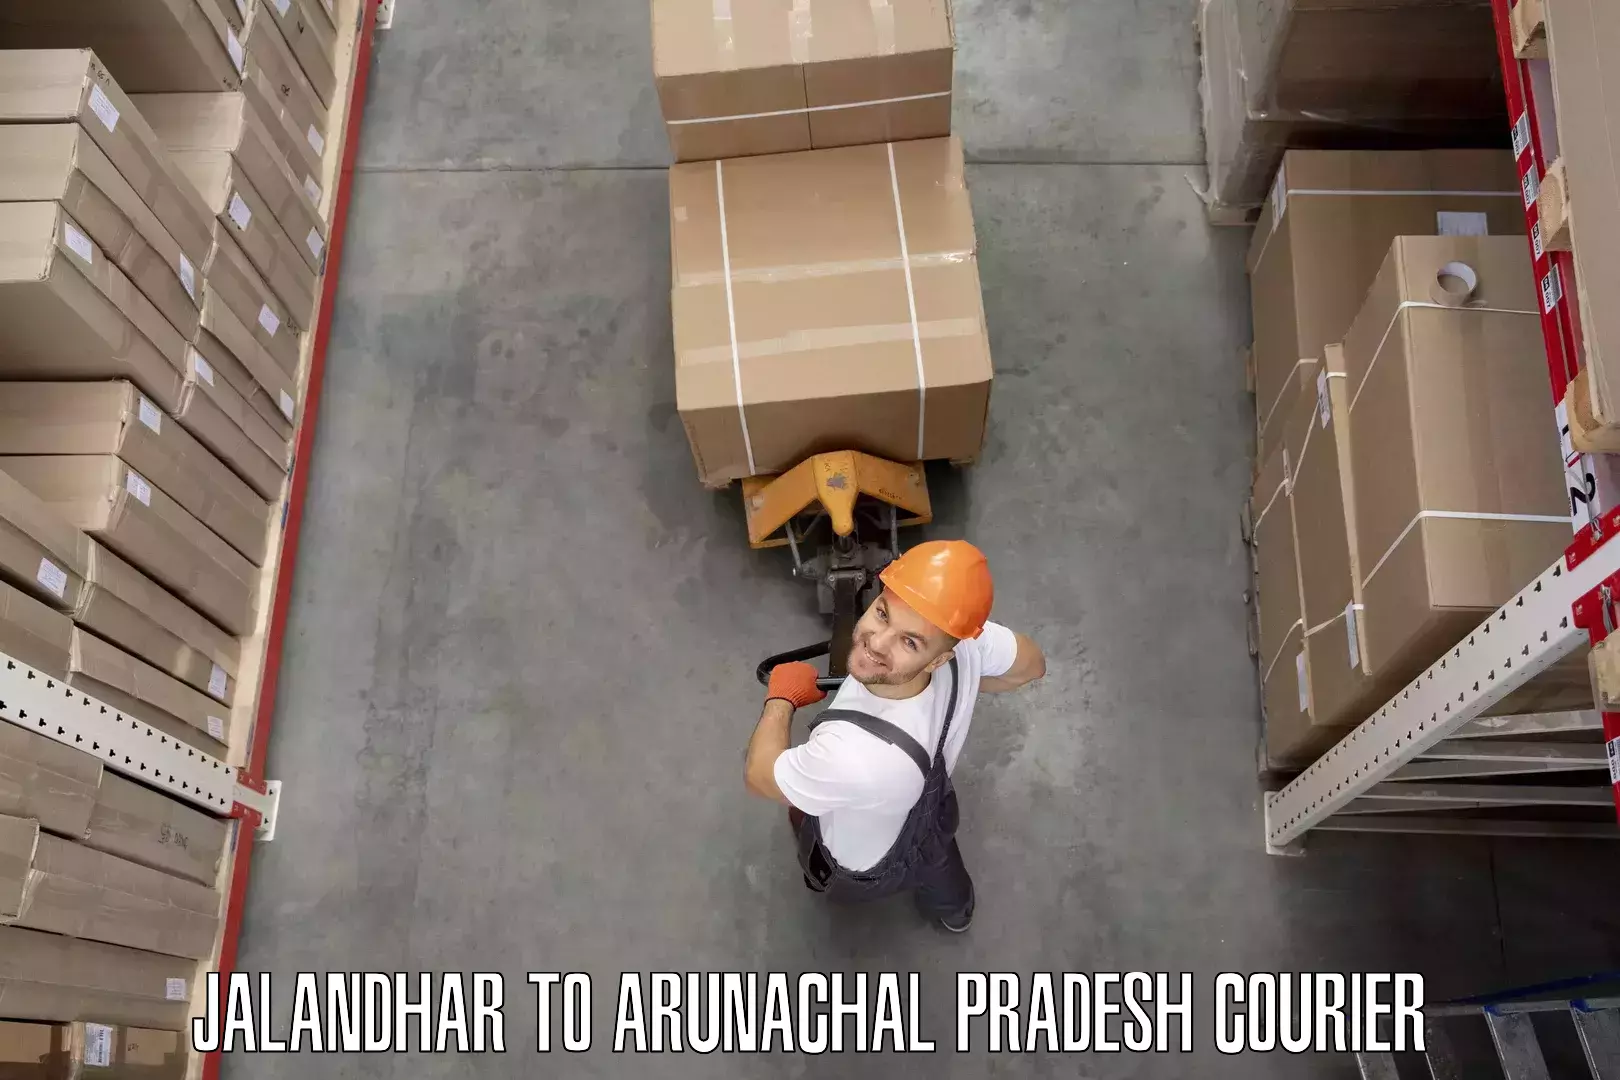 Furniture moving service Jalandhar to Arunachal Pradesh